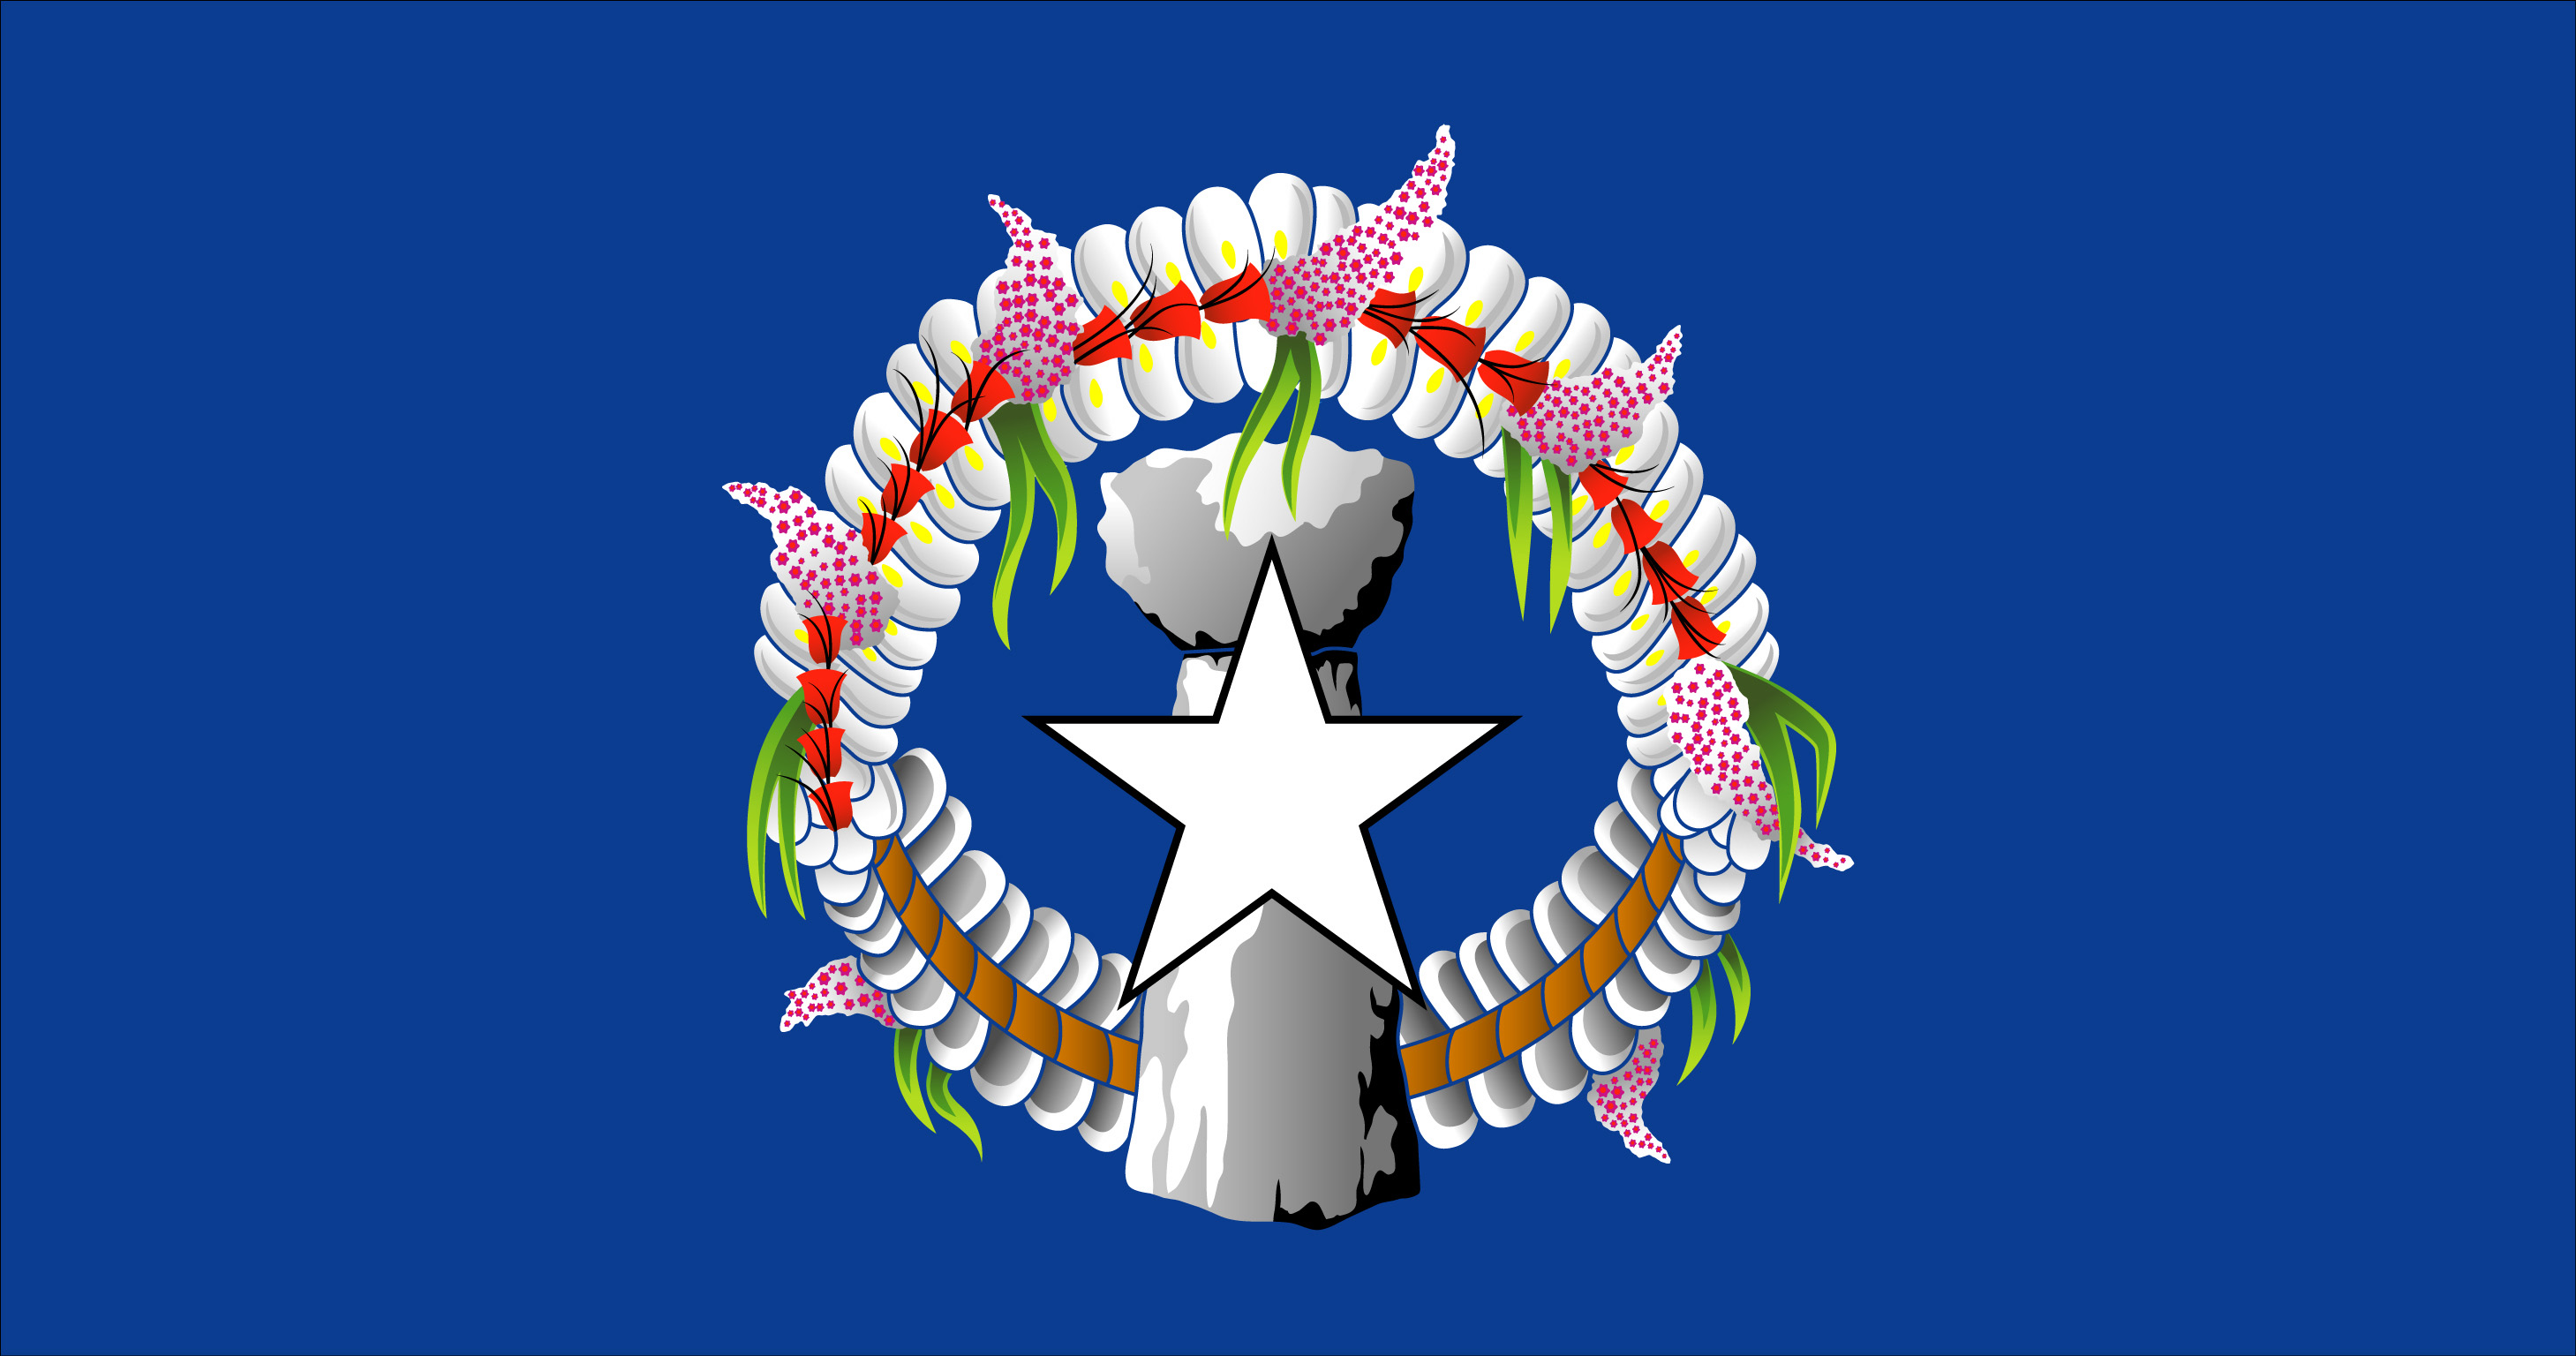 Northern Mariana Islands